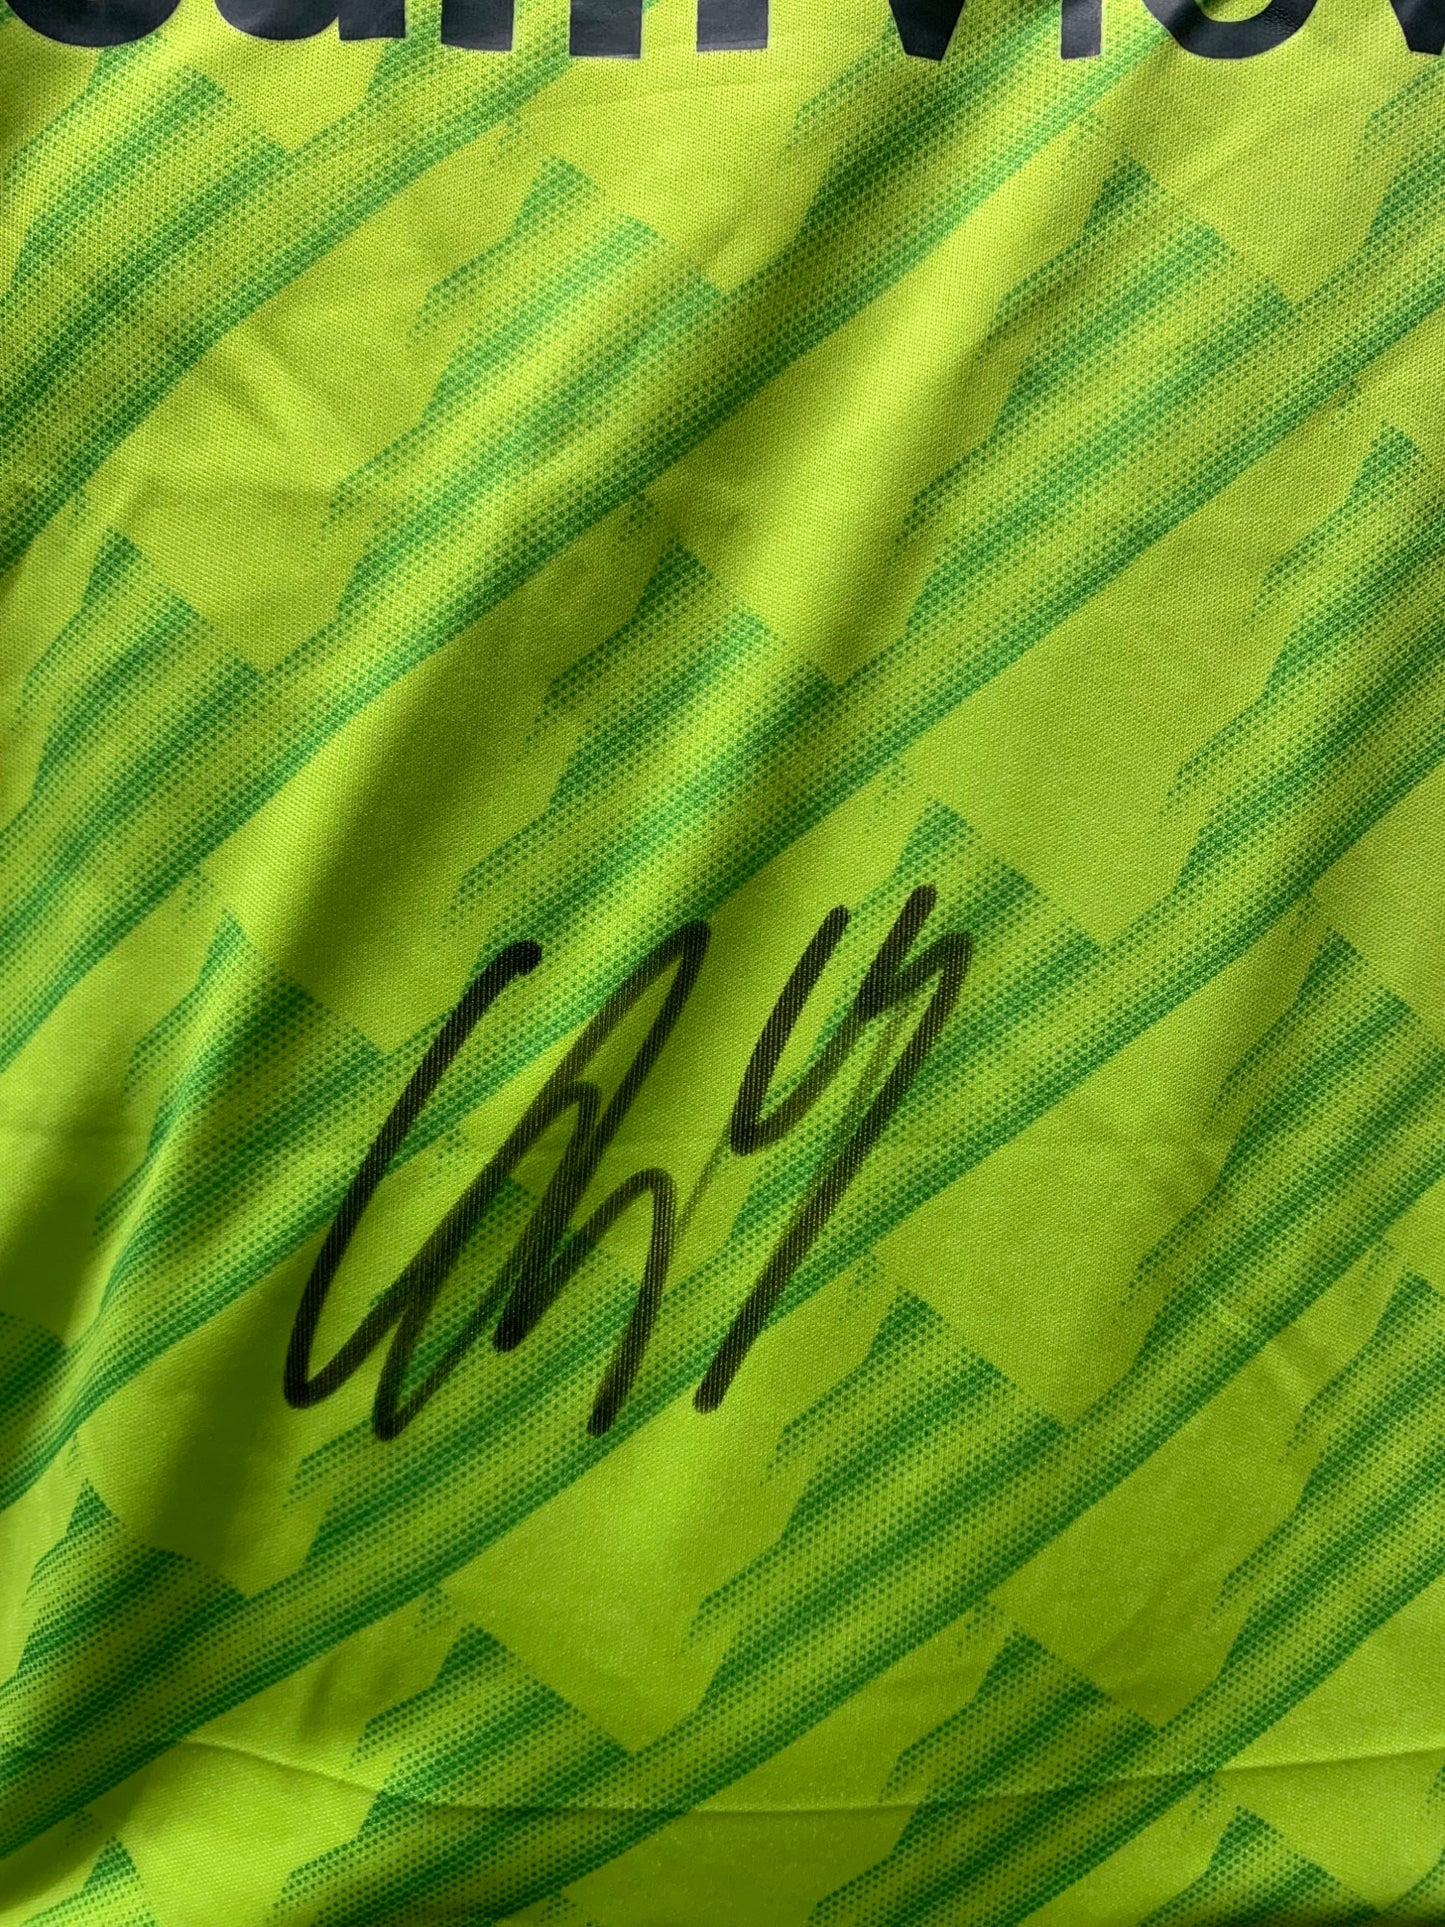 Christian Eriksen - Manchester United FC - hand-signed replica shirt - MUFC memorabilia, football shirt (UNFRAMED)